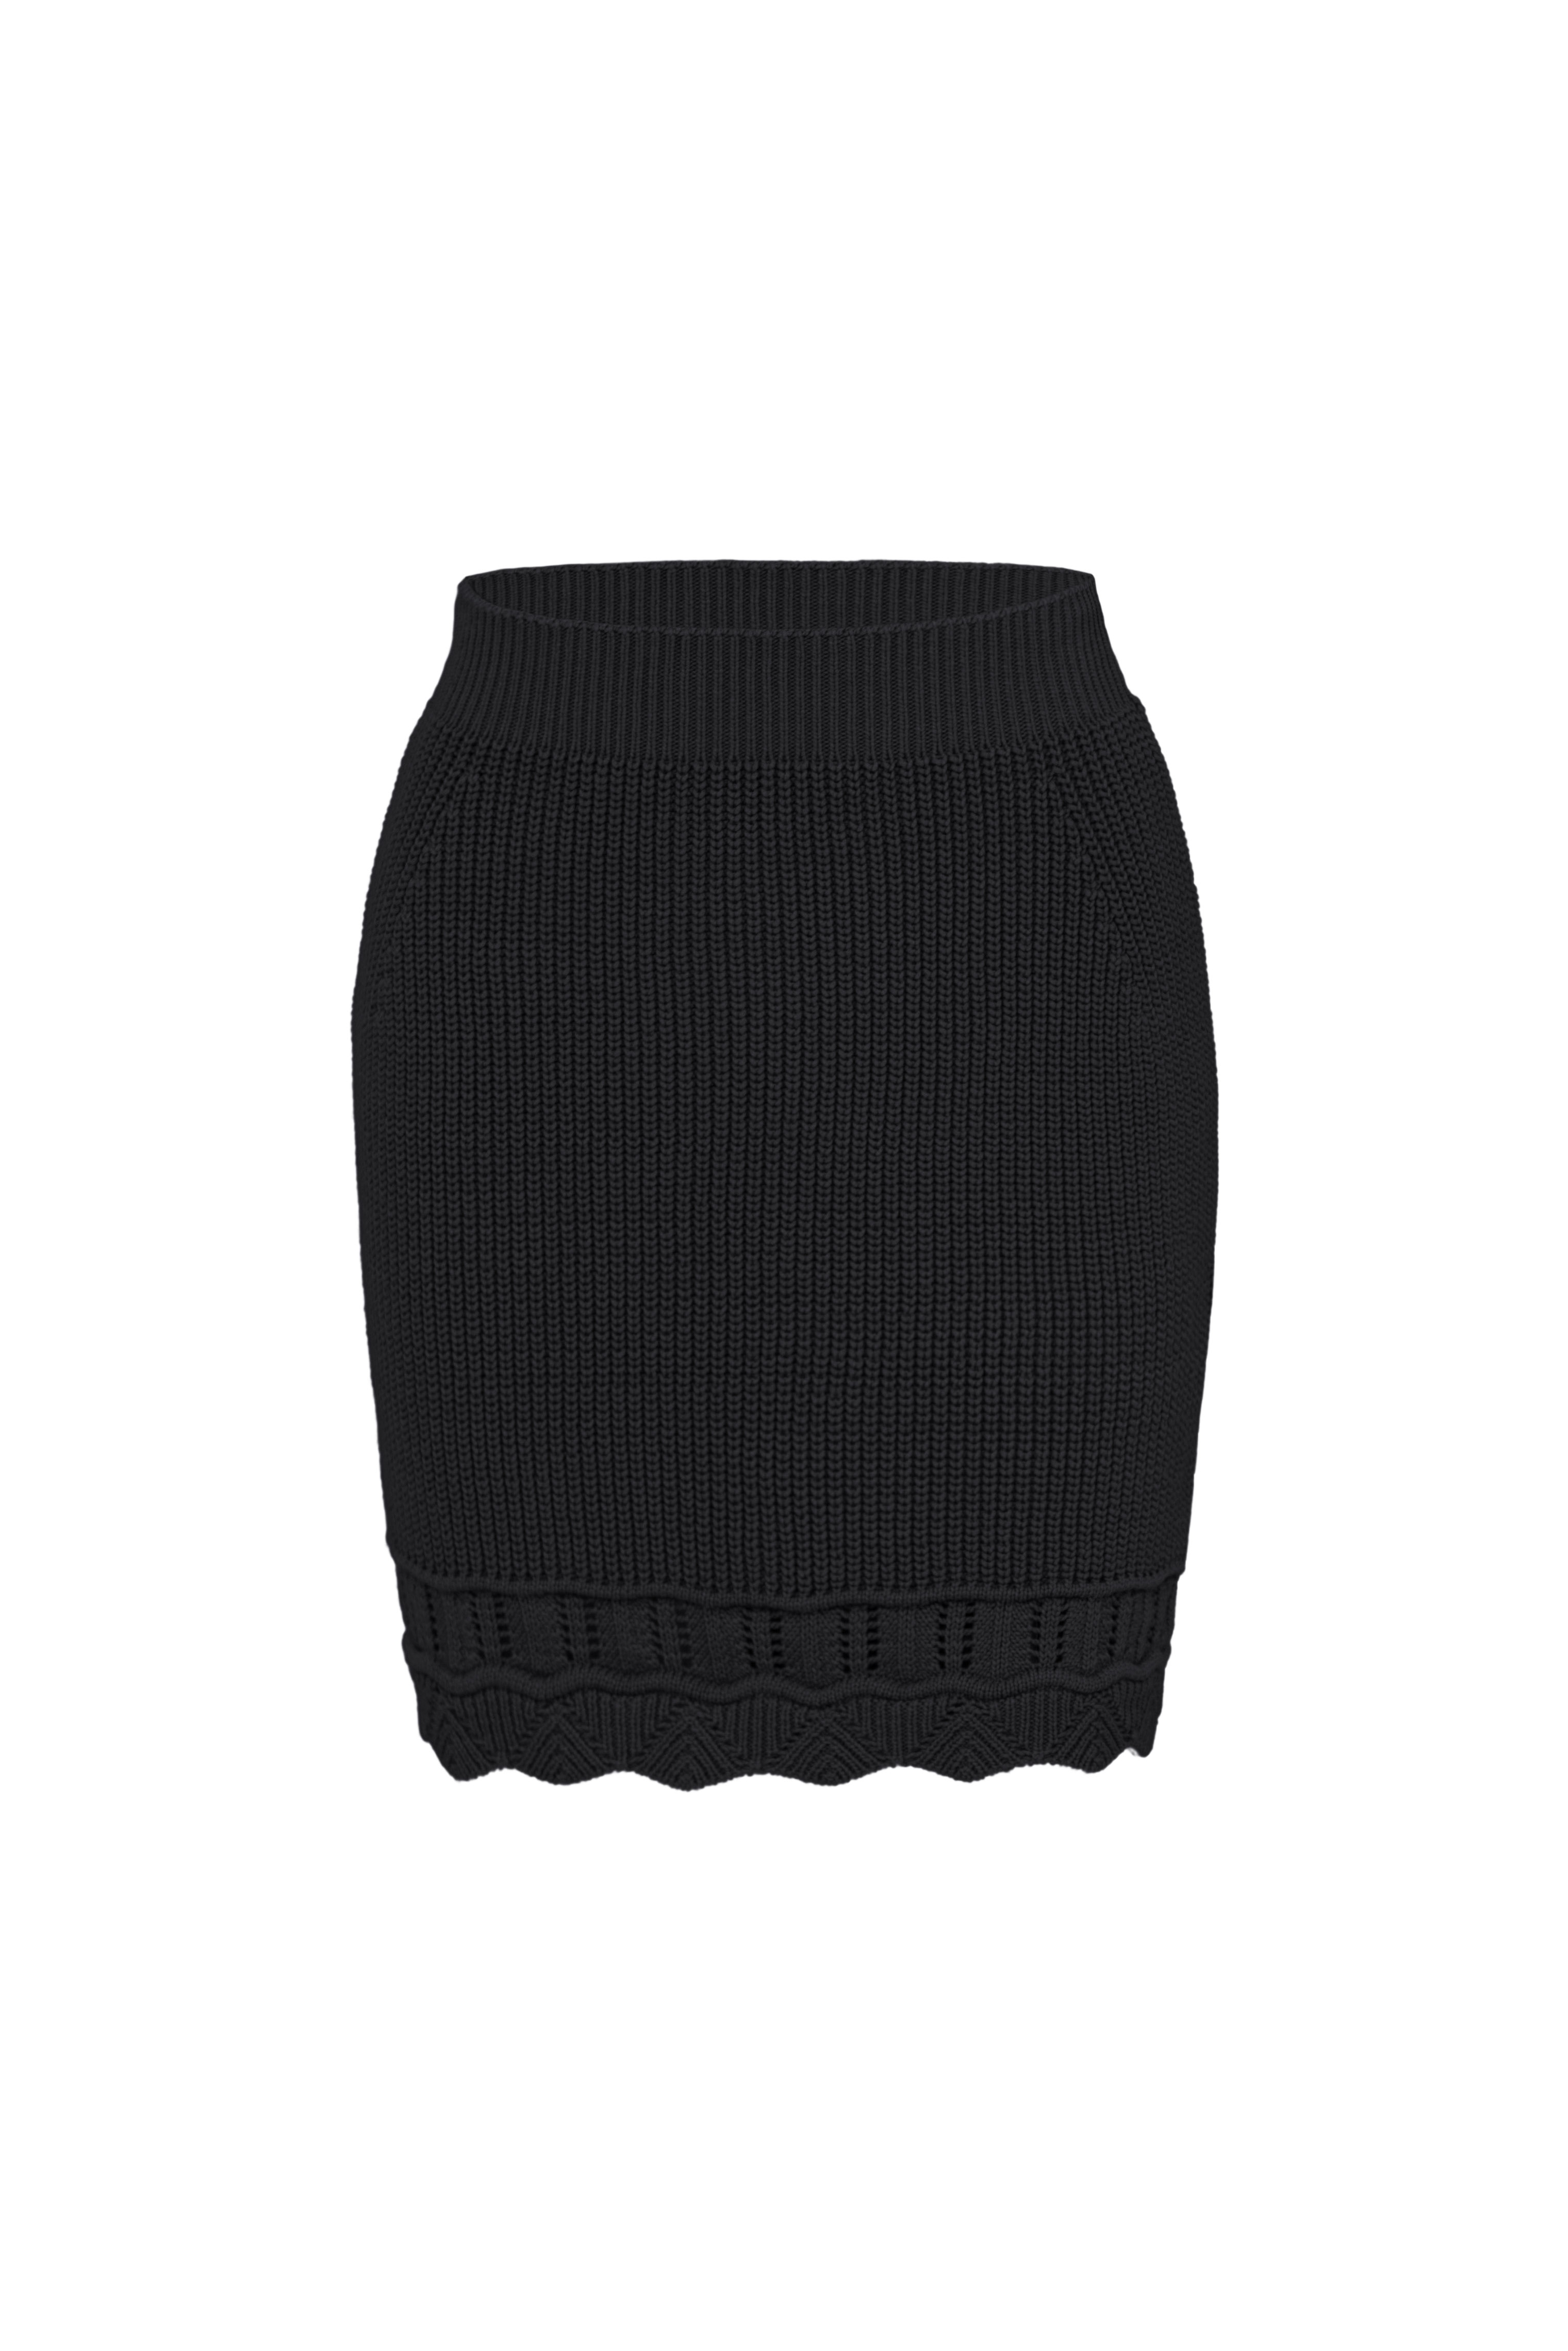 Skirt 4488-01 Black from BRUSNiKA